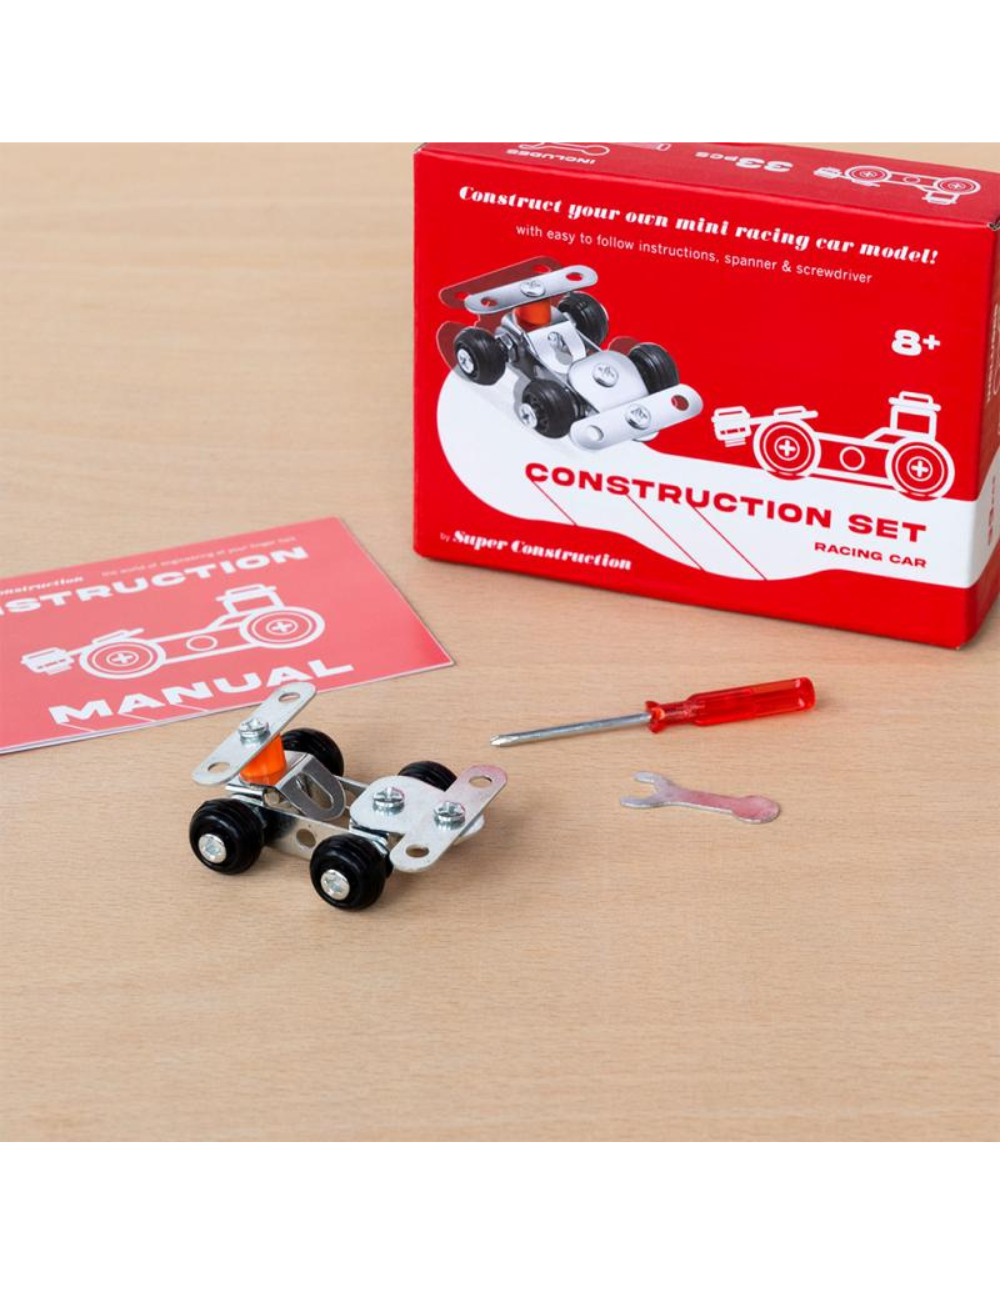 Mini Construction Kit Racing Car